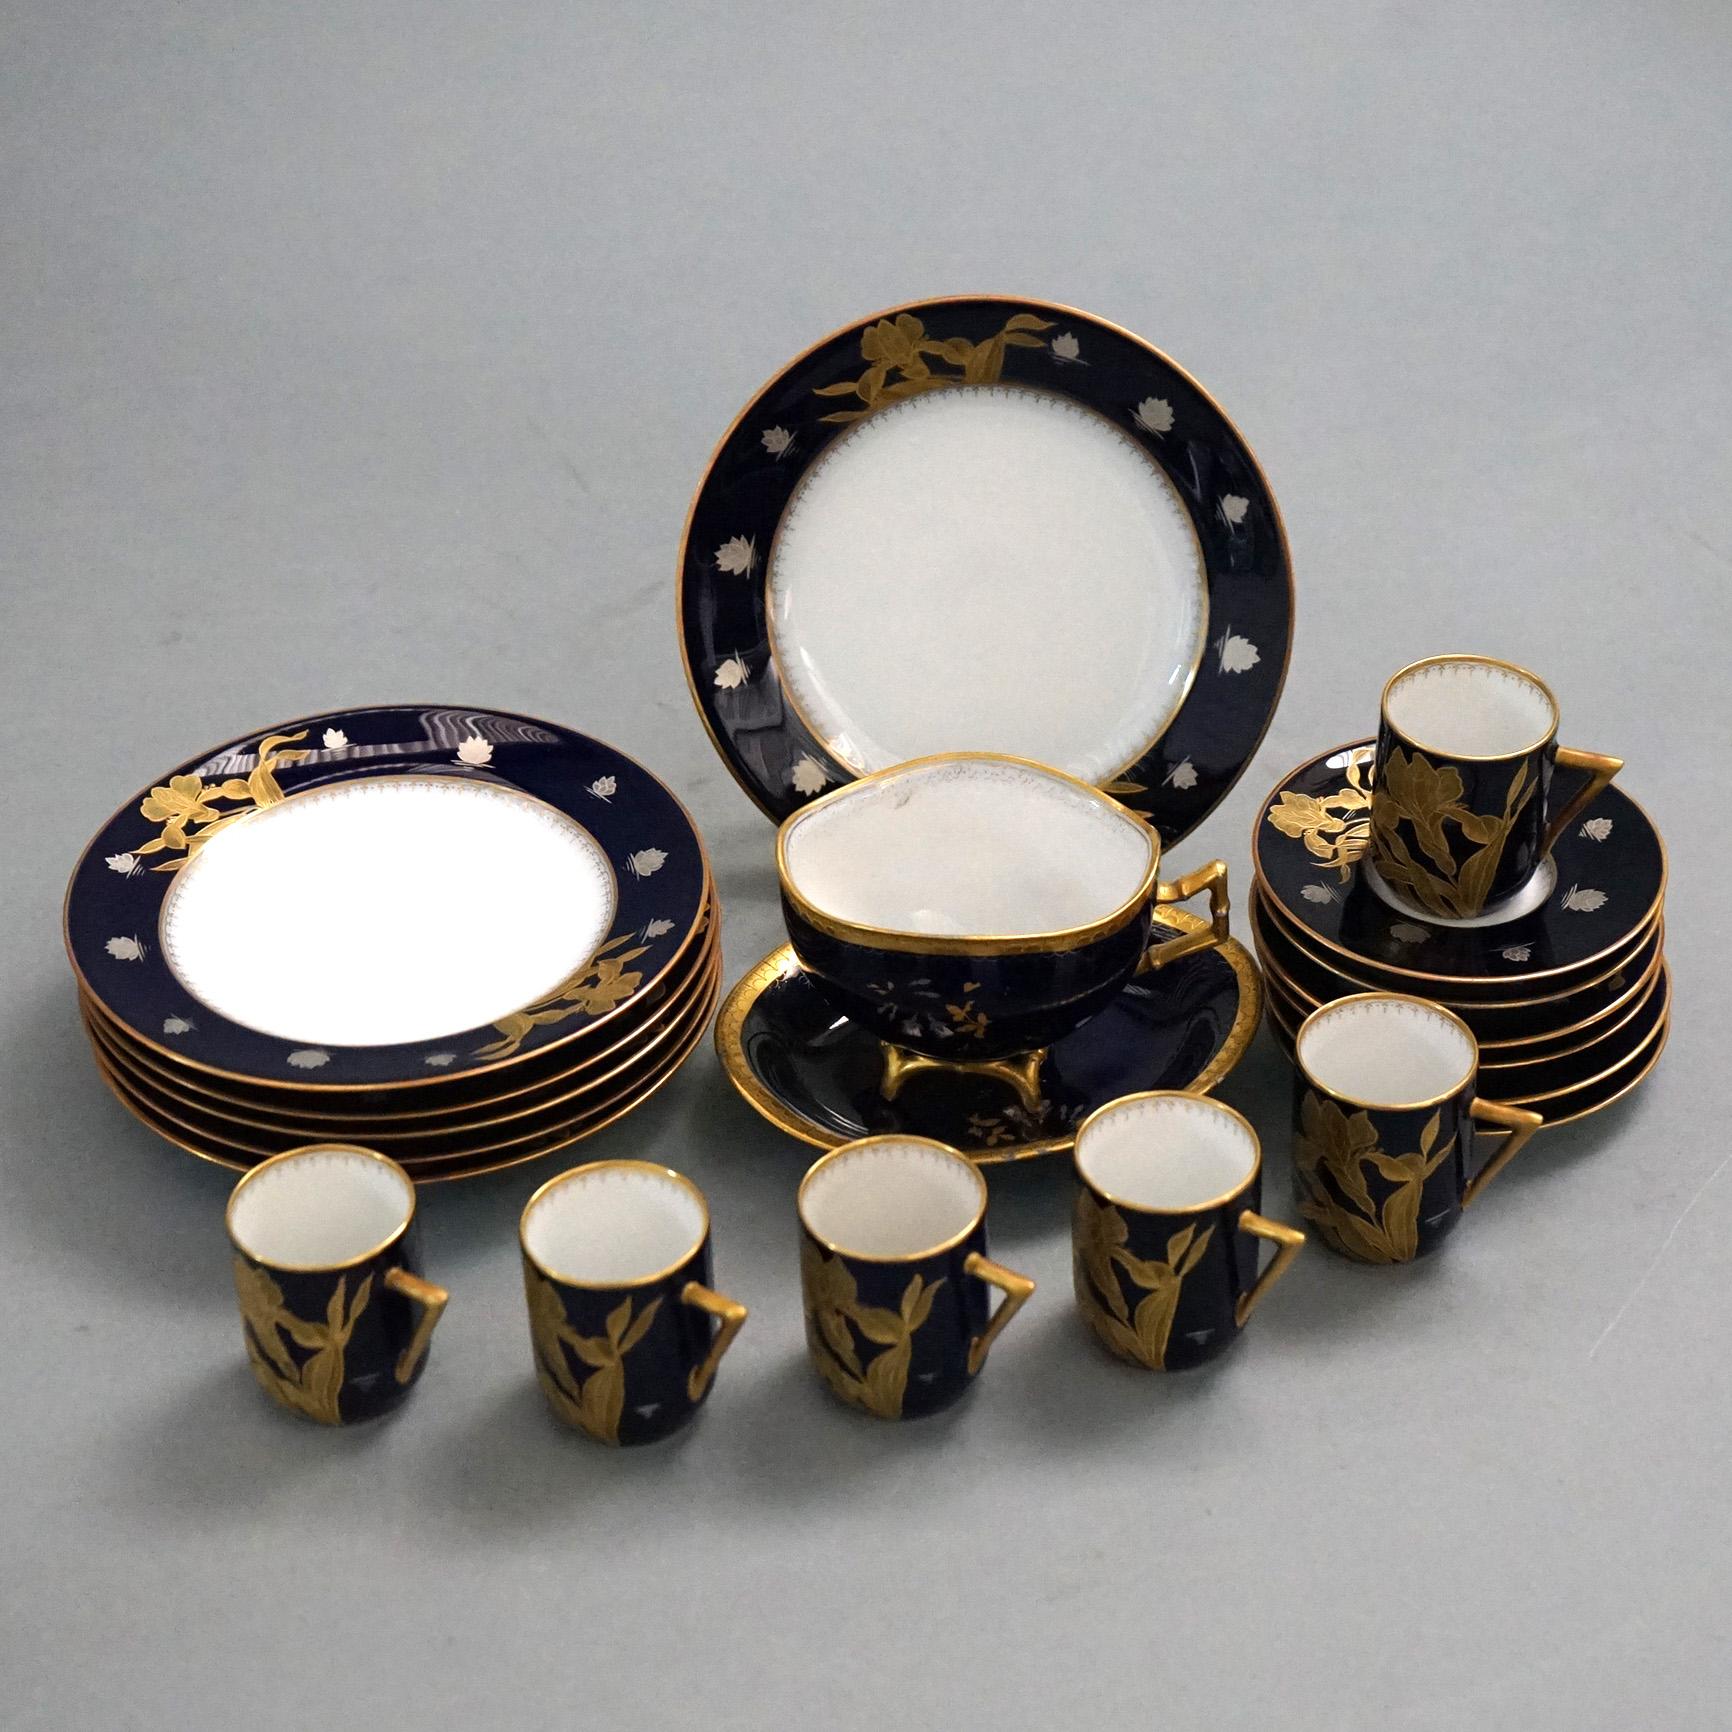 An antique 20 piece set of French Sevrés Japonism demitasse set offers porcelain construction with gilt lilies, en veso makers mark as photographed; c1900

Set includes:
6 plates 6.25